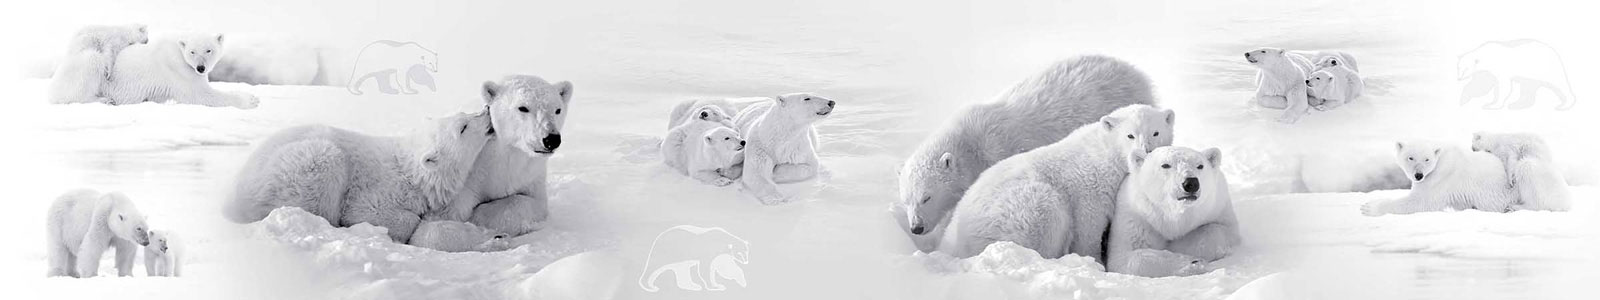 №3840 - Белые медведи отдыхают